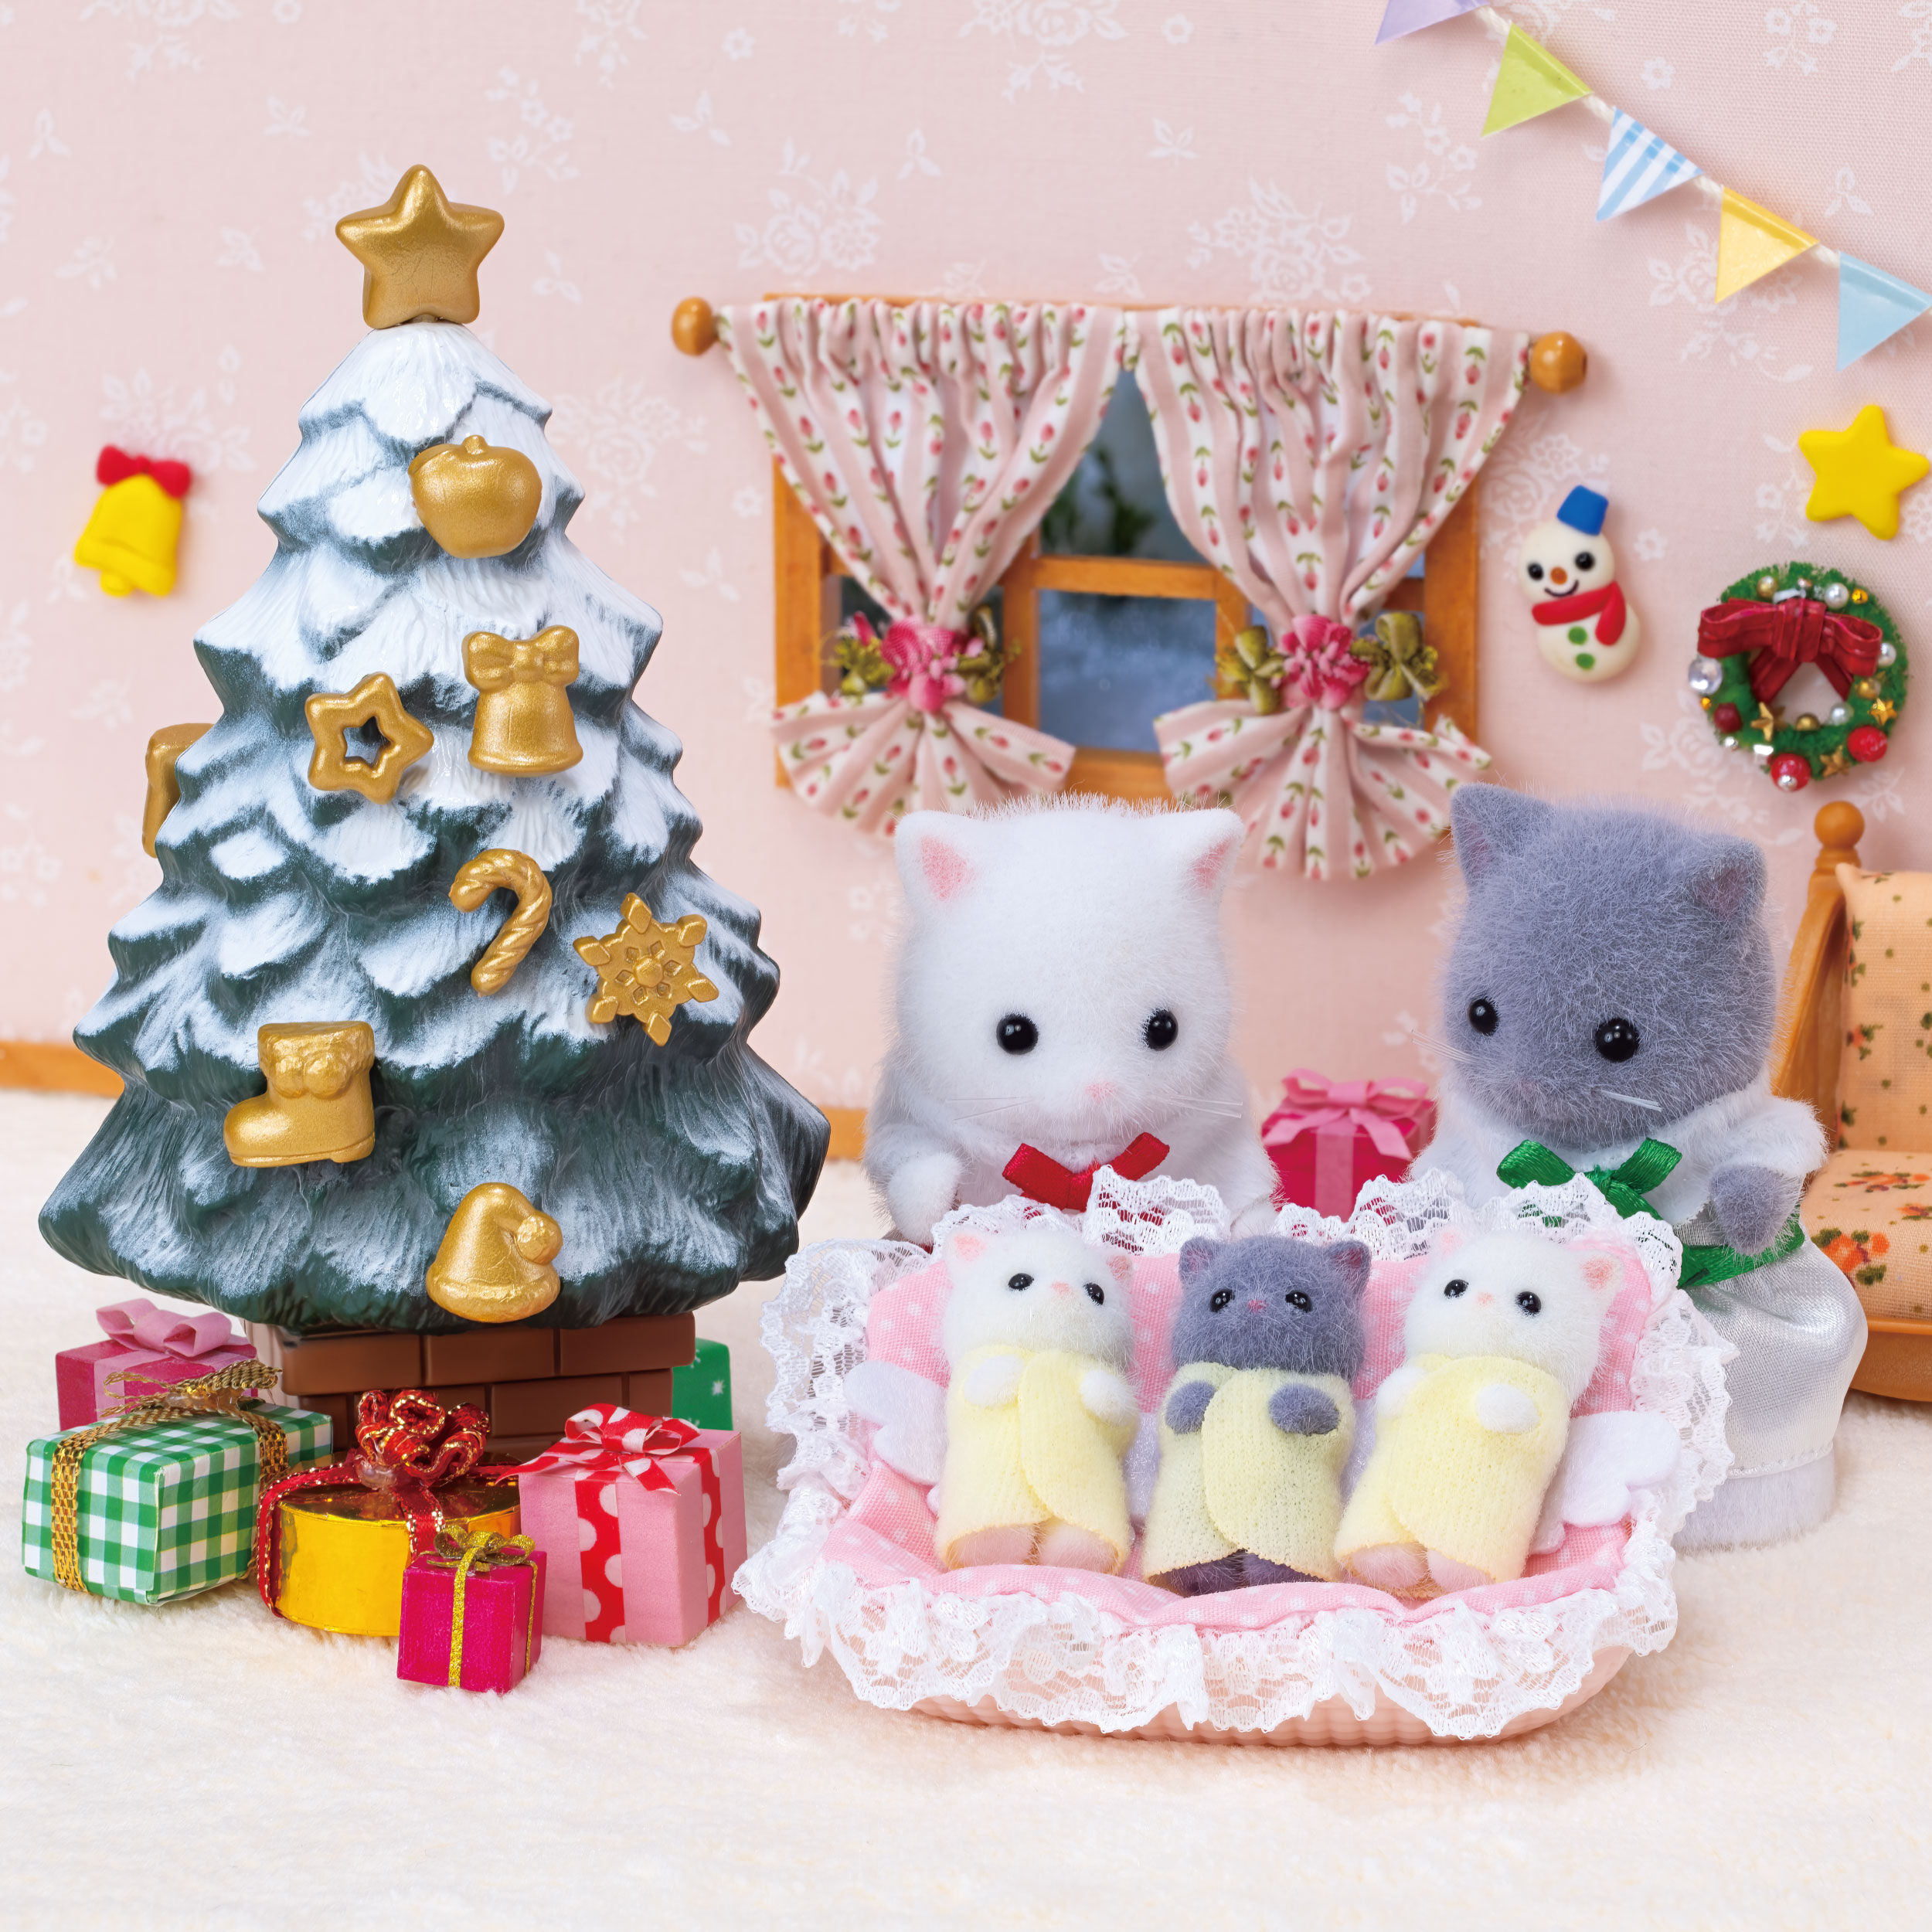 ホワイトクリスマスセット / 家具と人形セット - シルバニアファミリー 